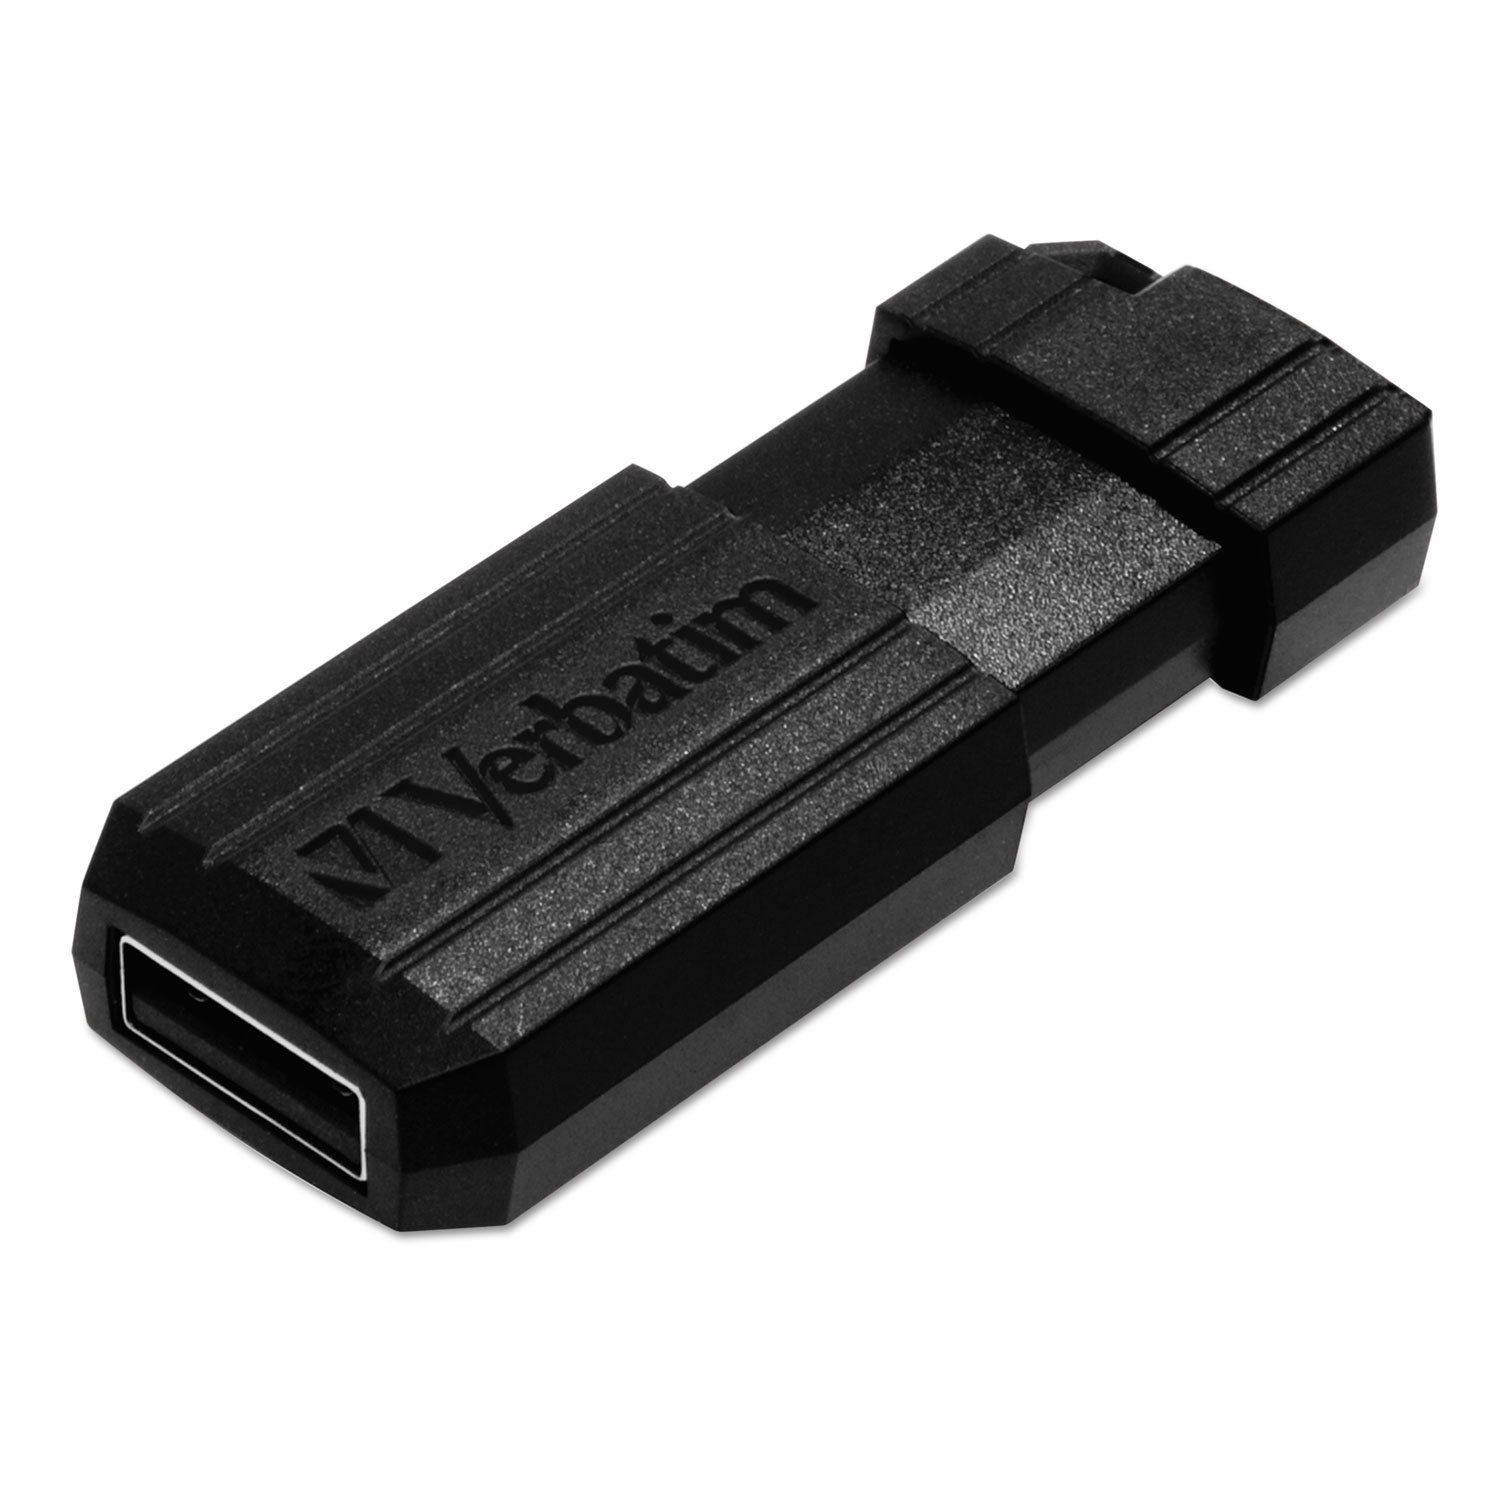 PinStripe USB Flash Drive, 8GB, Black